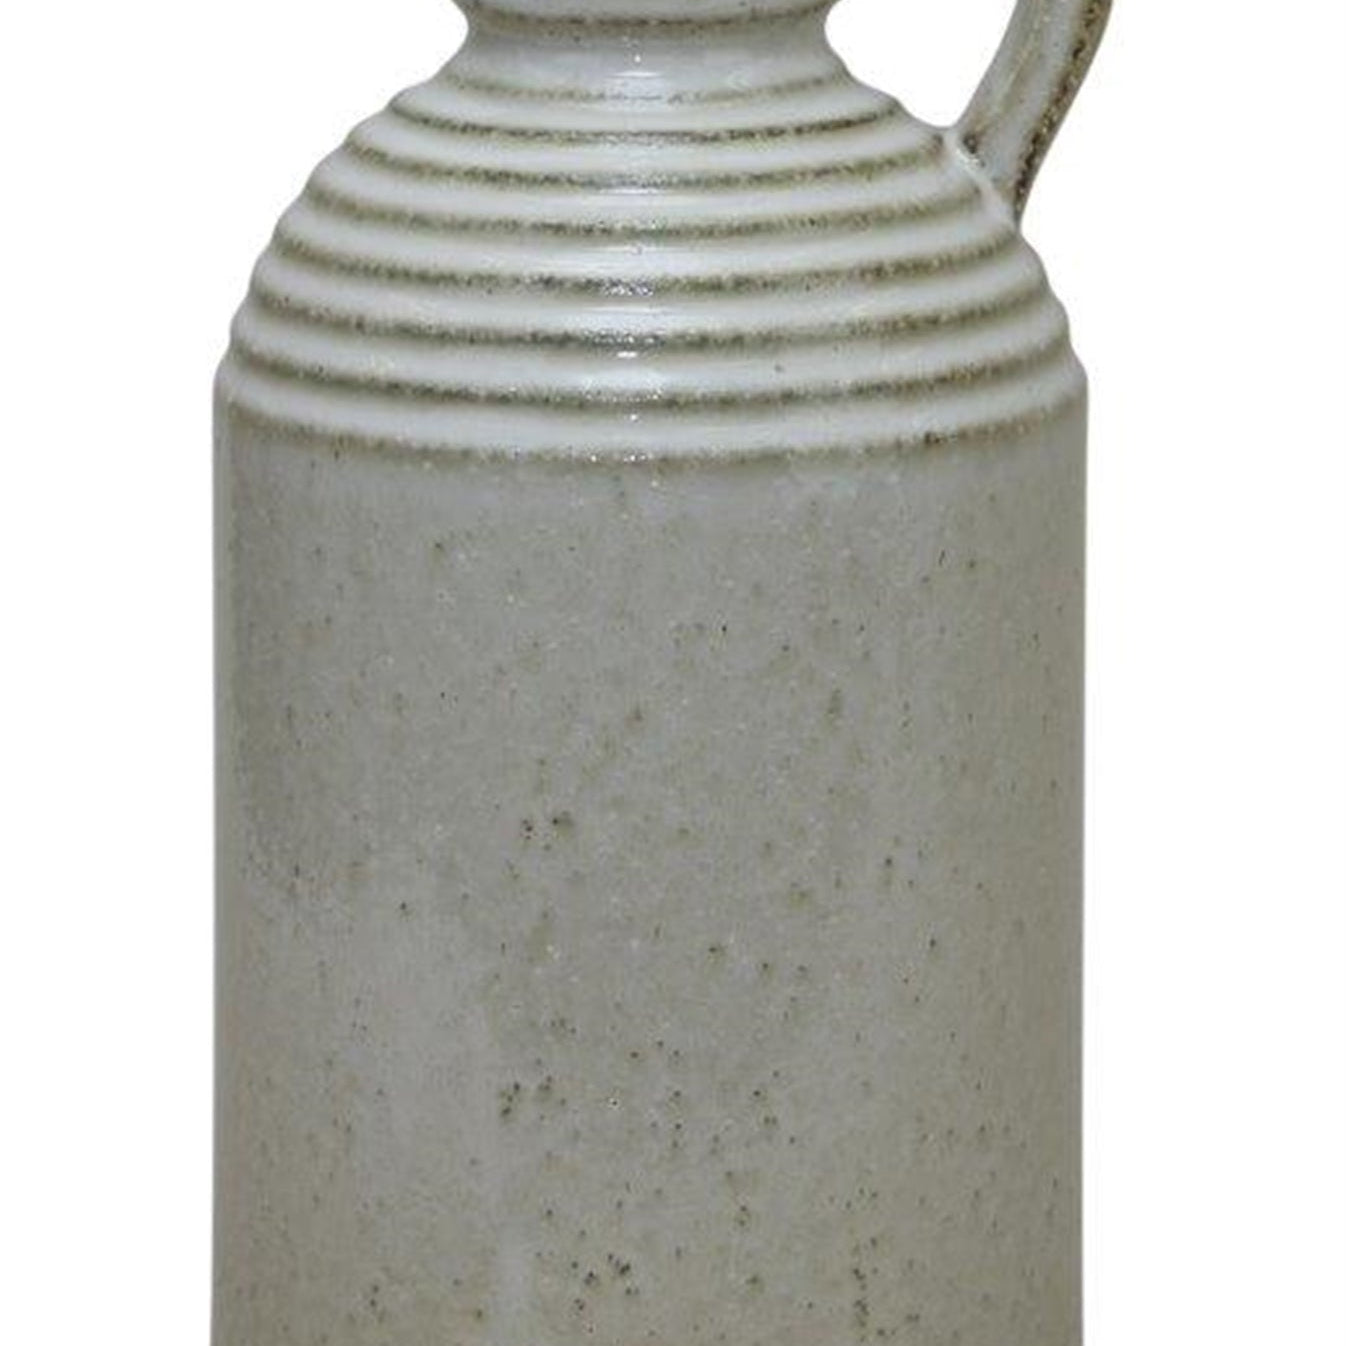 Rustic Ceramic Jug Vase with Washed Cream Finish 11.75"H - Vases